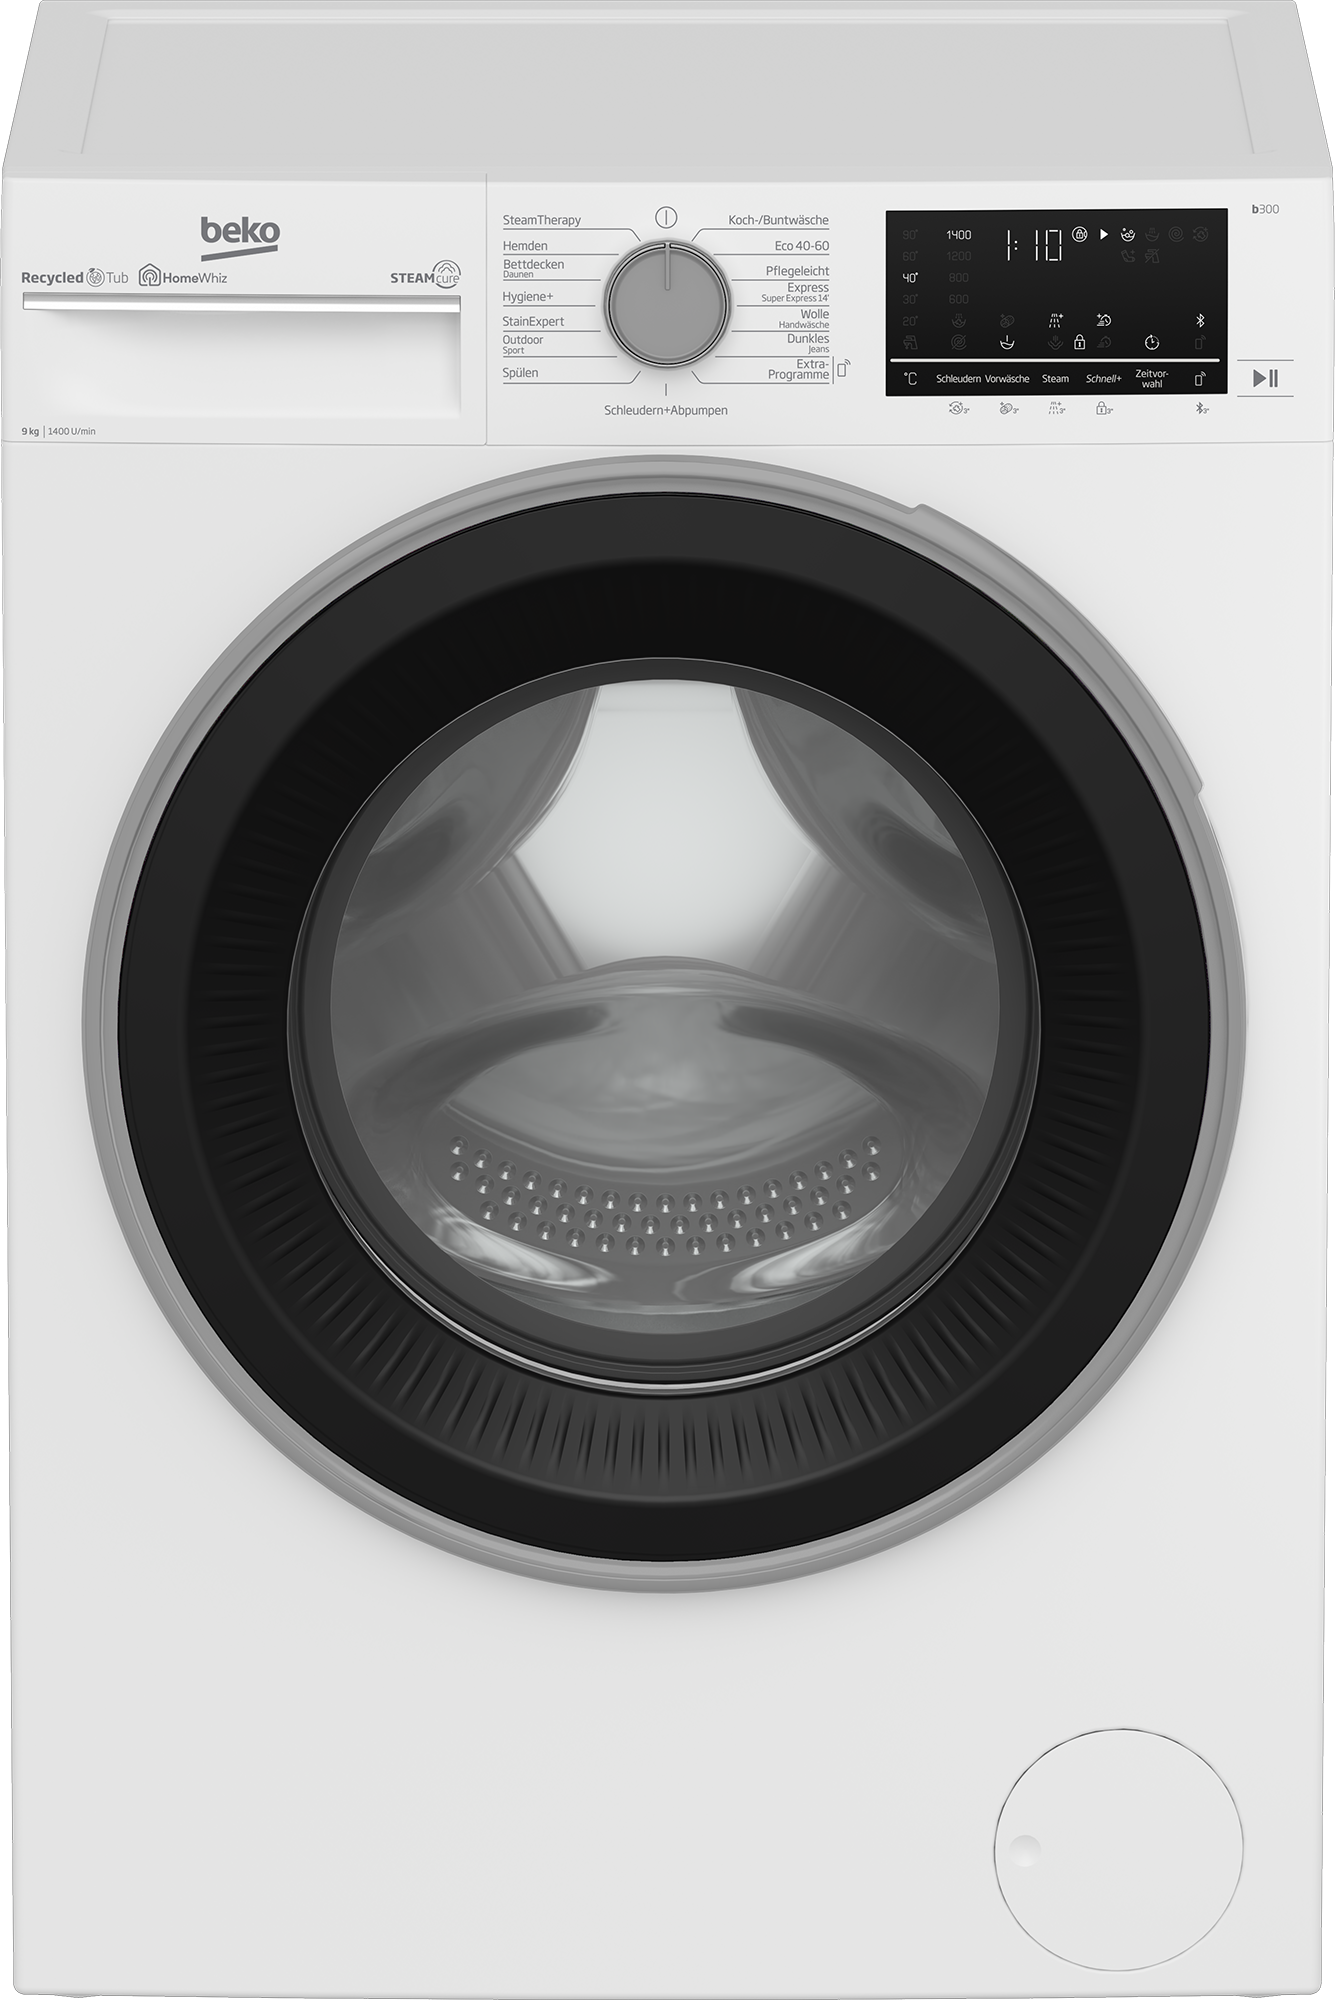 BEKO Waschmaschine, b300, B3WFU59415W2, allergenfrei U/min, - kg, Garantie mit 99% SteamCure Jahren 9 1400 XXL 3